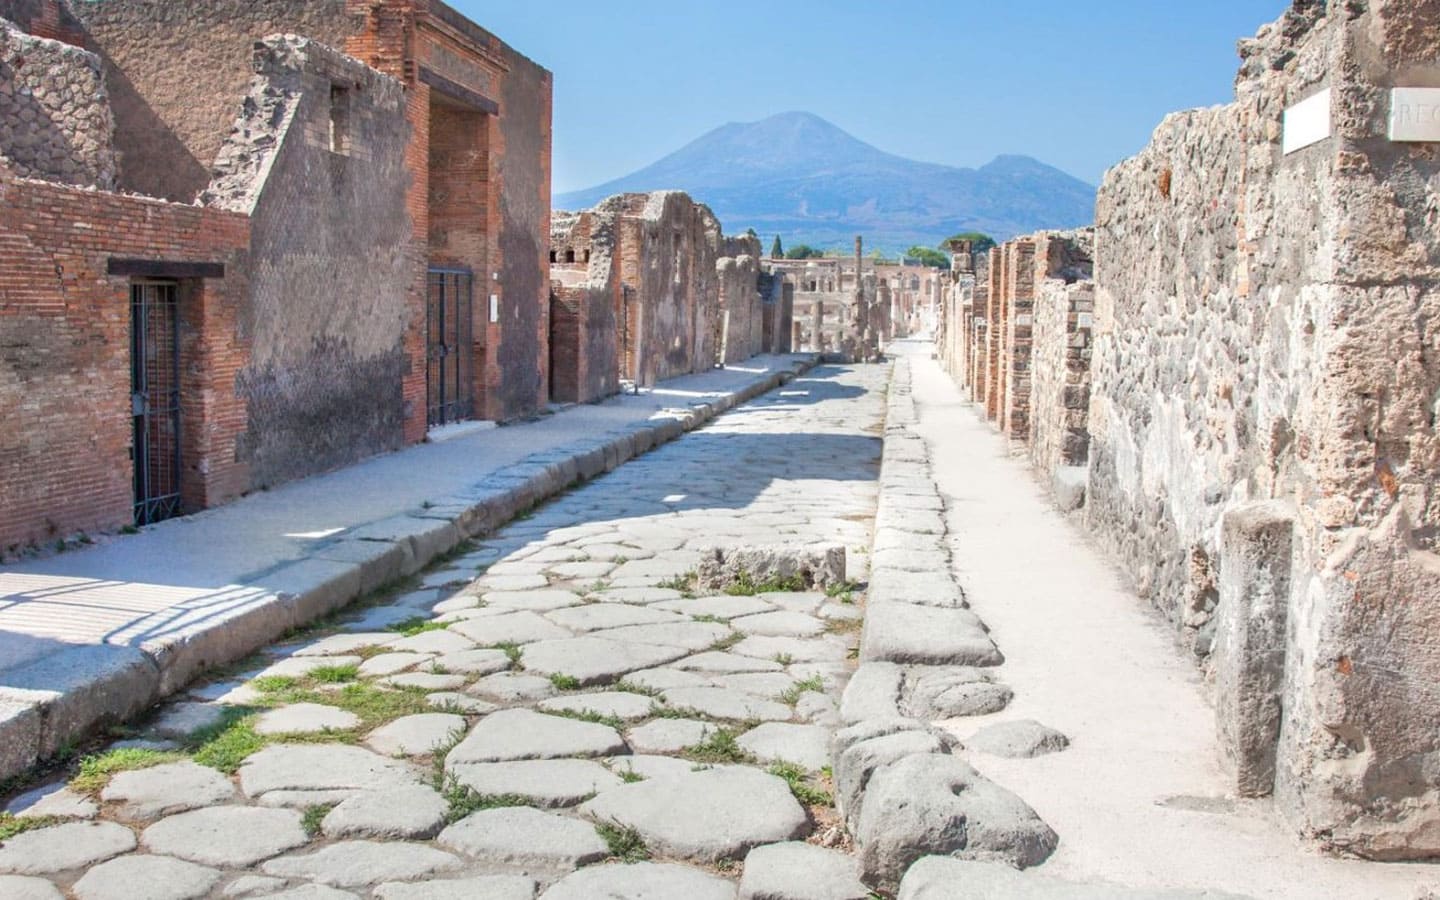 Pompeii, Herculaneum and Vesuvius